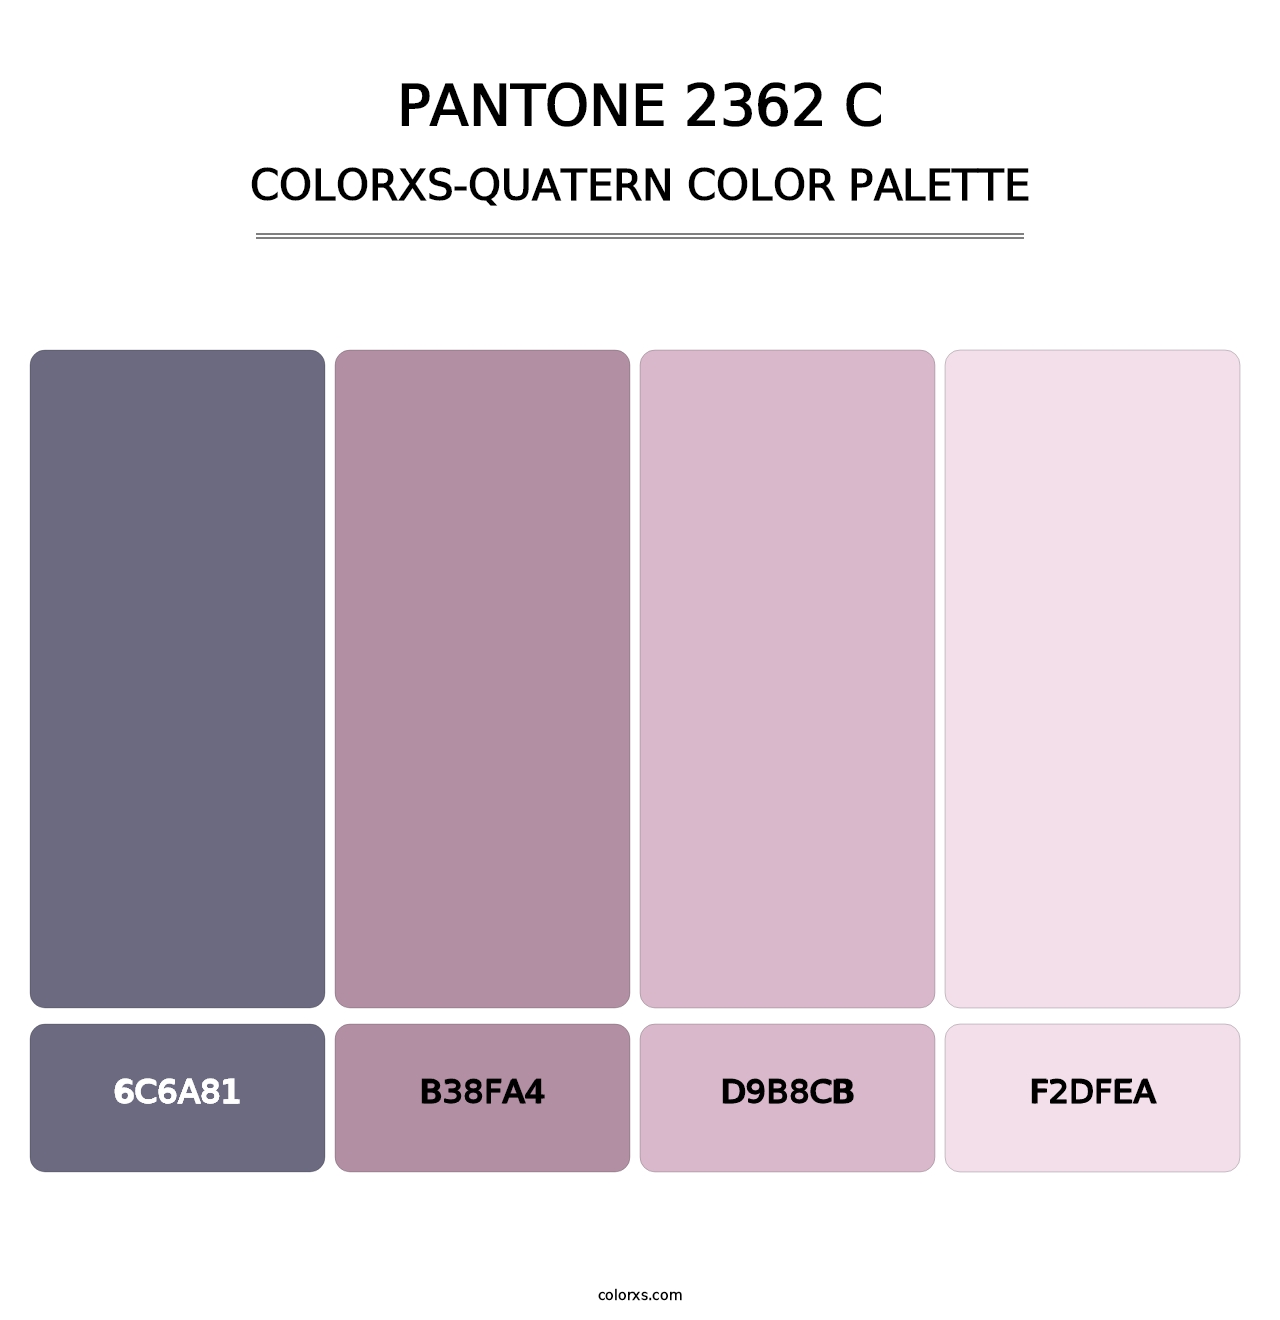 PANTONE 2362 C - Colorxs Quatern Palette